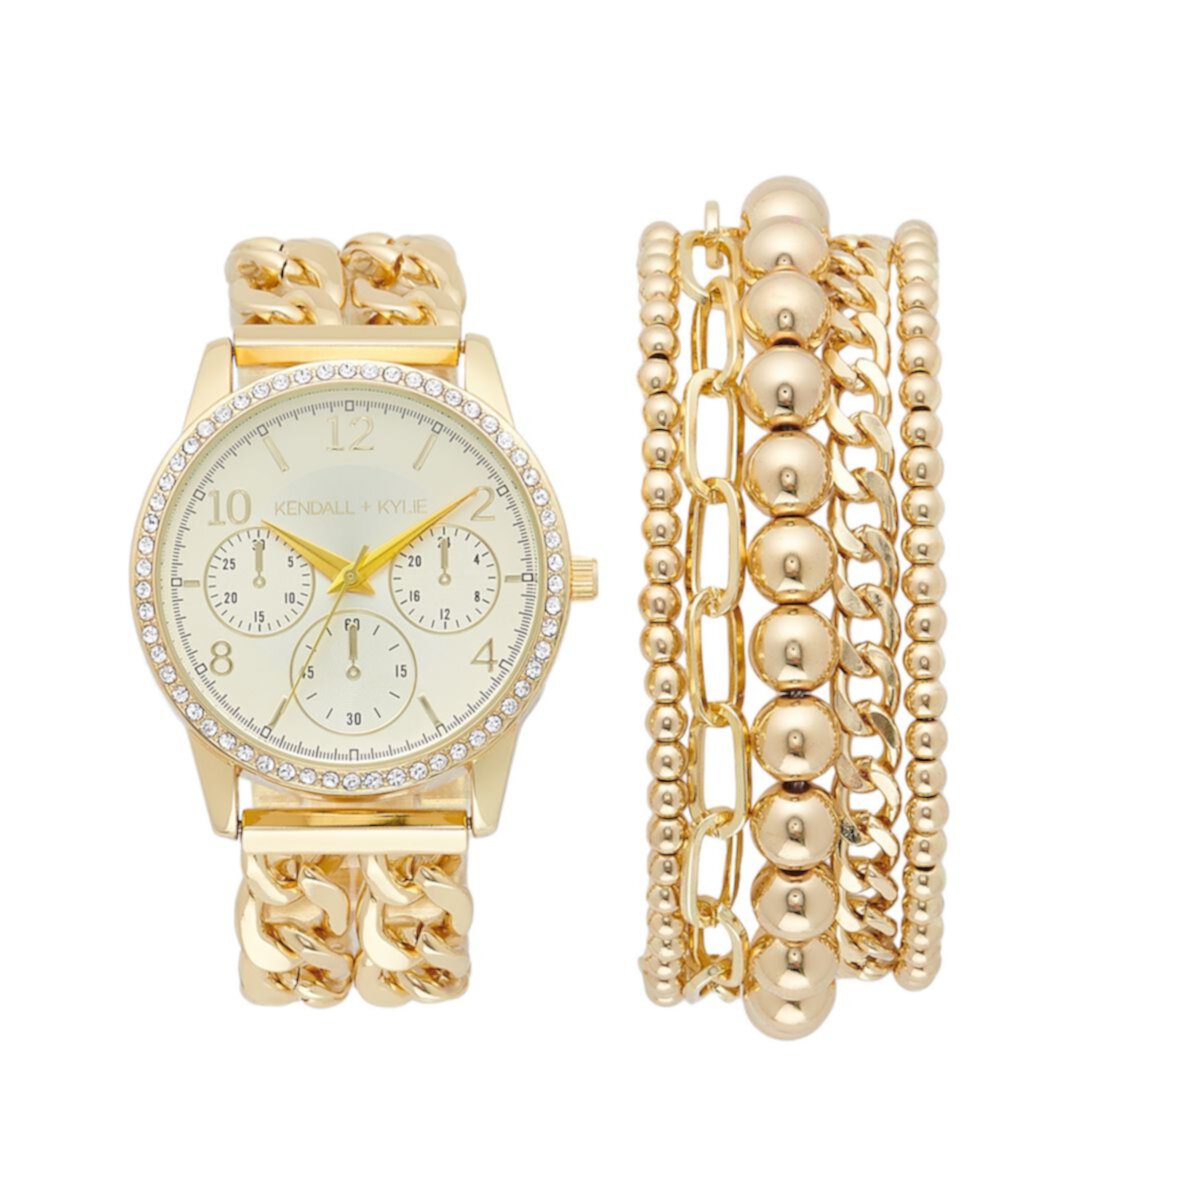 KENDALL & KYLIE - Женские часы с кристаллами и многожильный браслет KENDALL + KYLIE